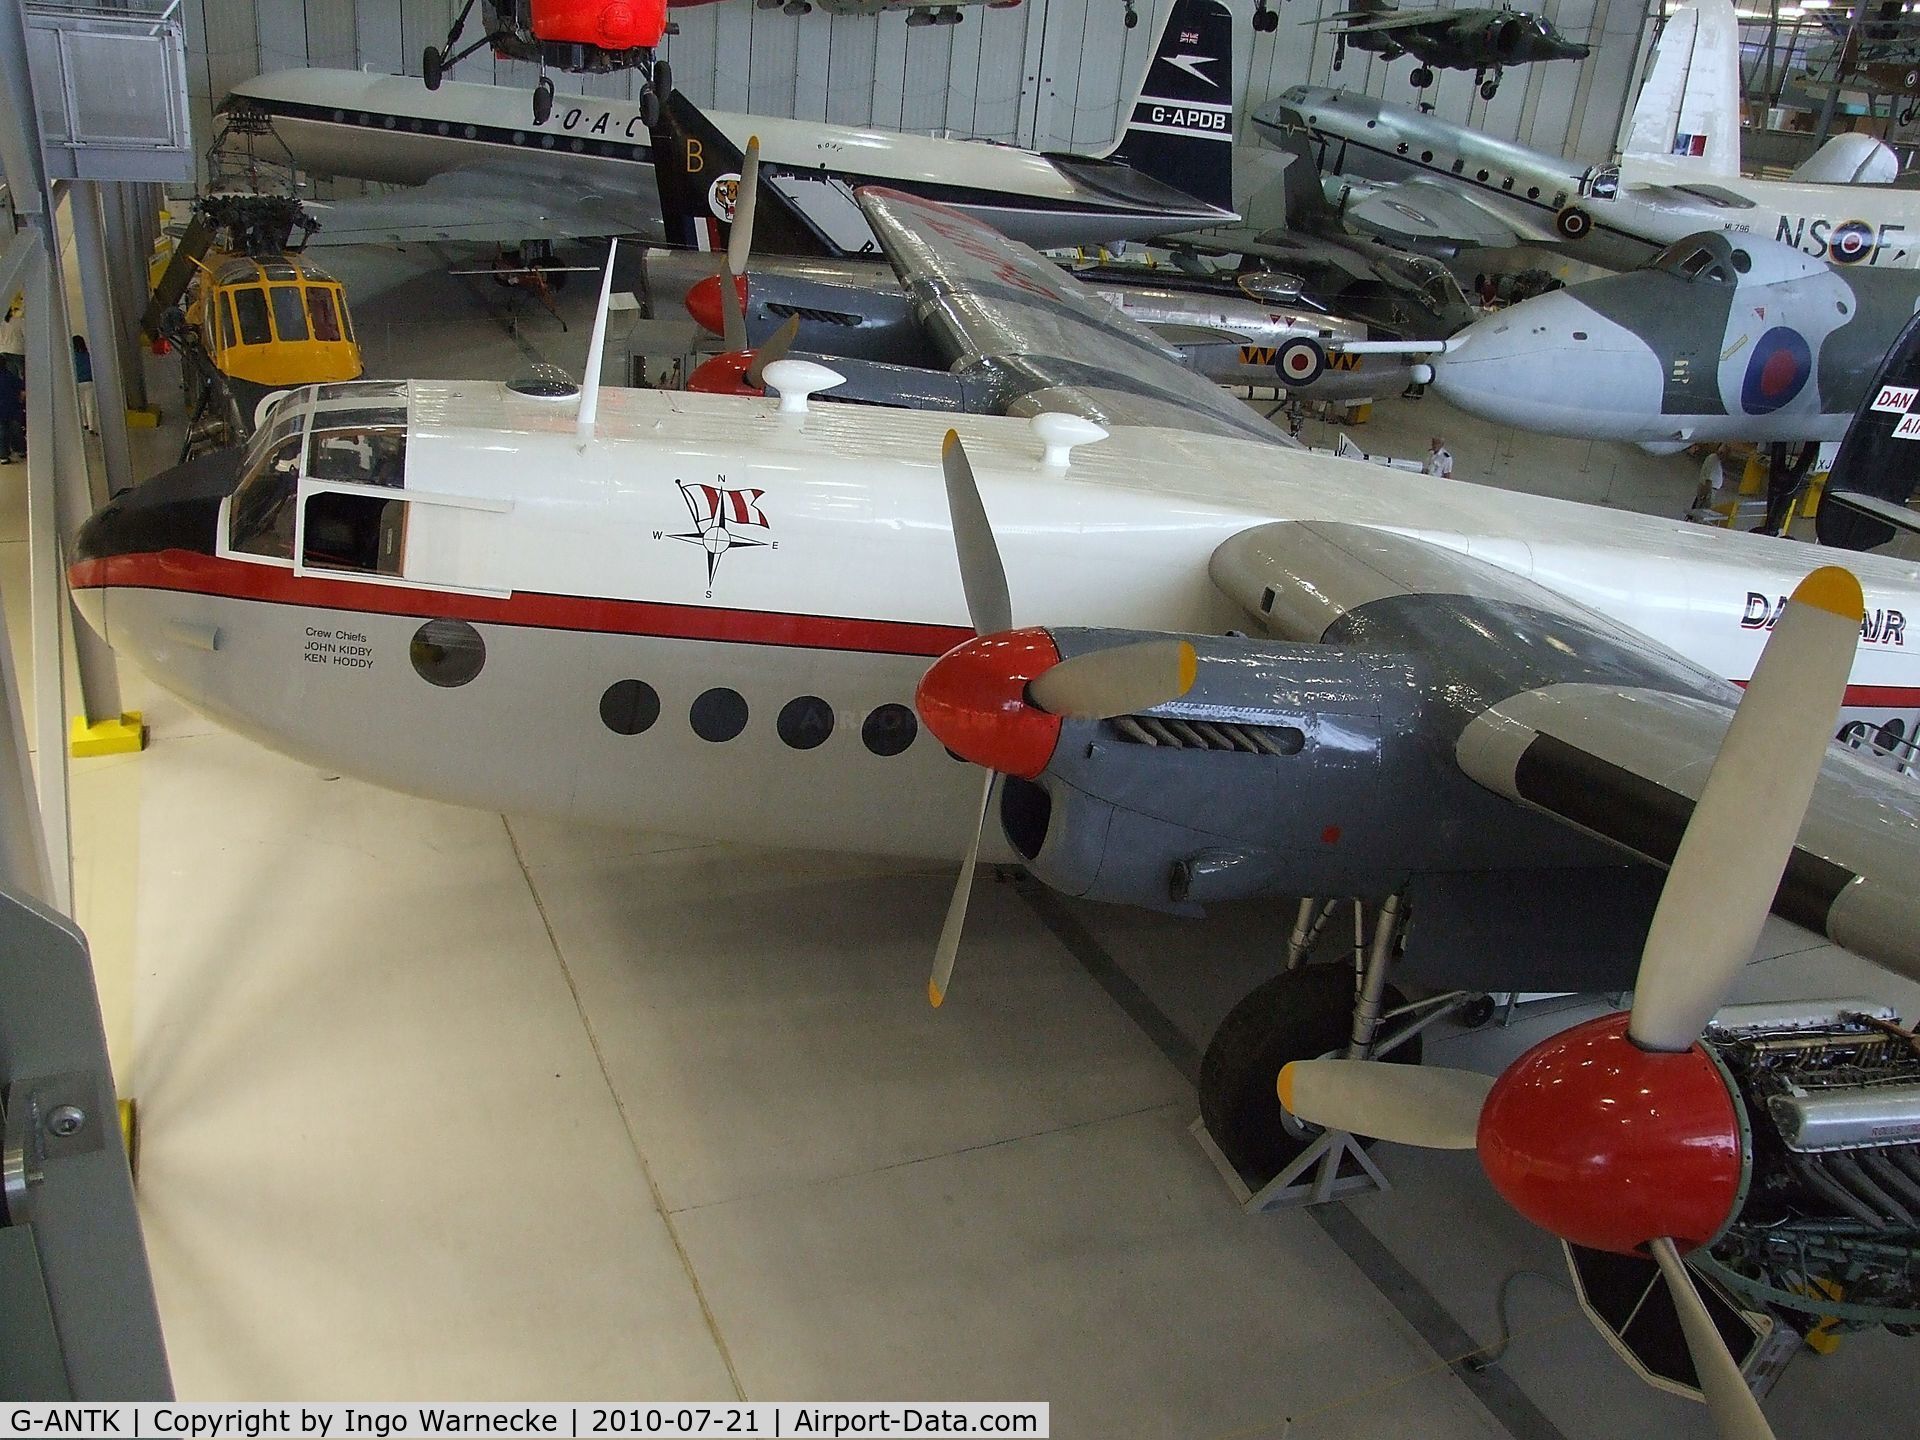 G-ANTK, 1946 Avro 685 YORK C1 C/N MW232, Avro 685 York C1 at the Imperial War Museum, Duxford